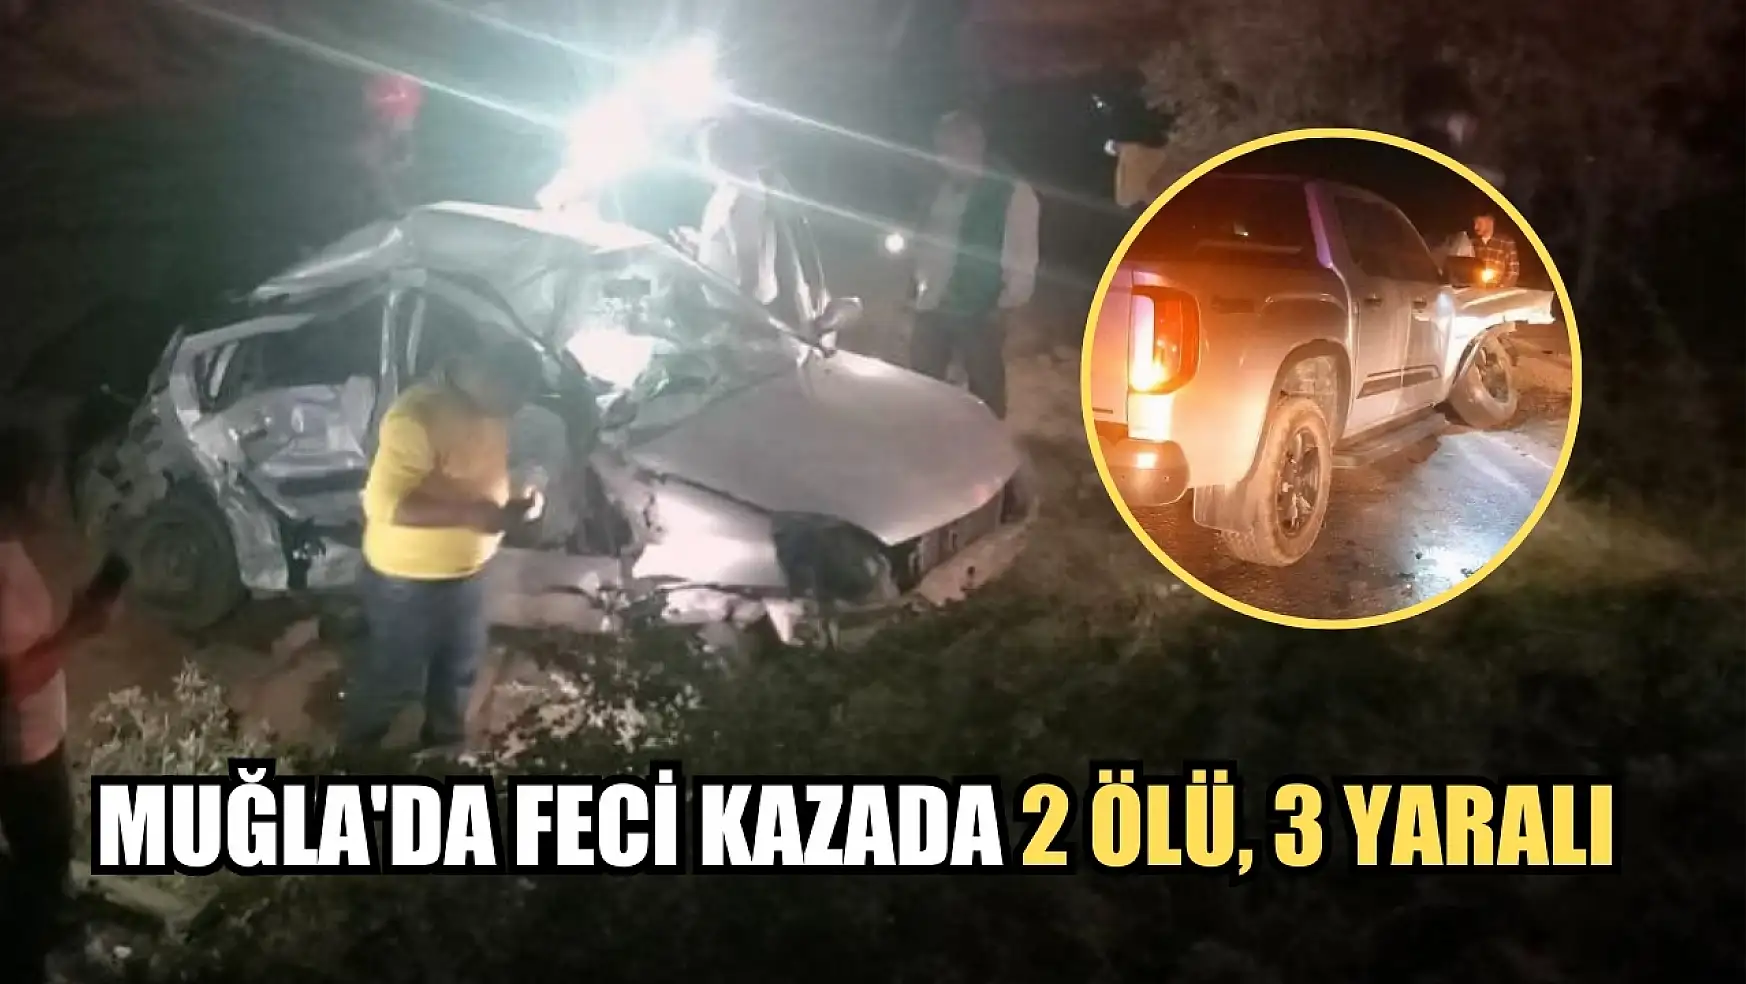 Muğla'da feci kazada 2 ölü, 3 yaralı